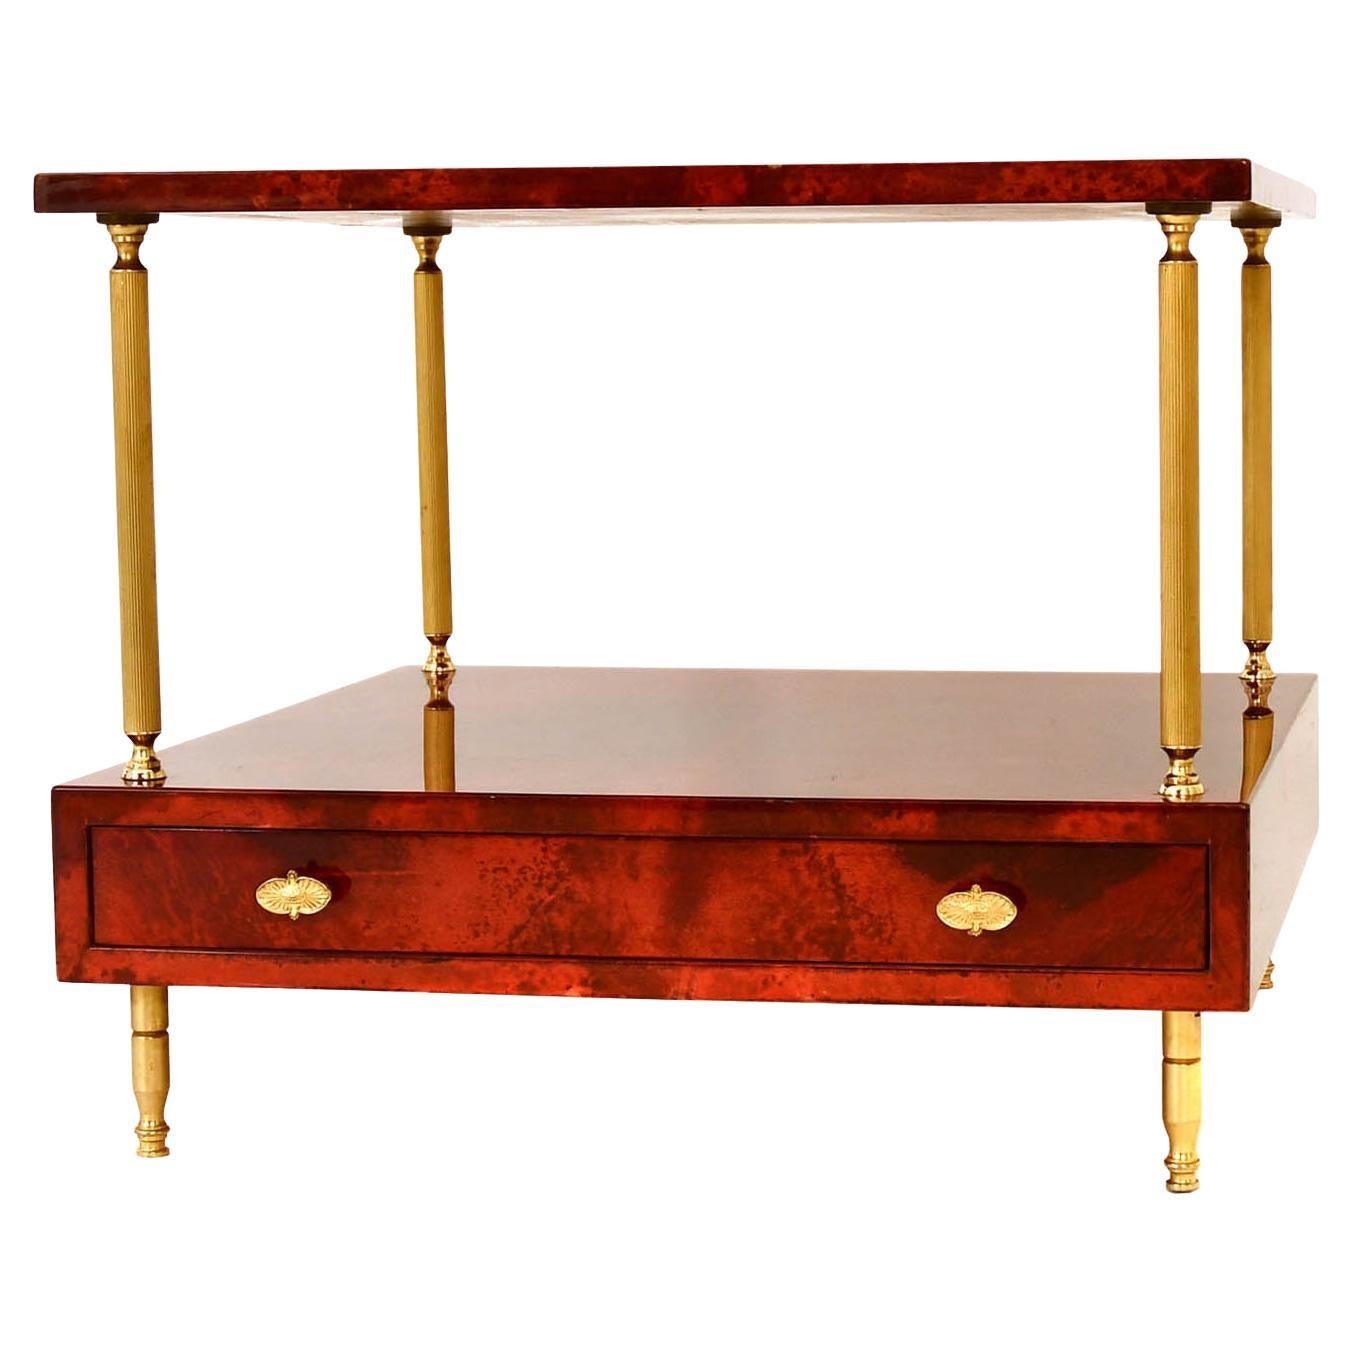 Aldo Tura (1909-1963 Italie) a conçu cette table d'appoint pour canapé-lit avec tiroir dans les années 1955. Aldo Tura est un cas à part dans le monde du mobilier du milieu du siècle.
Il est également appelé le maître du parchemin et a conçu